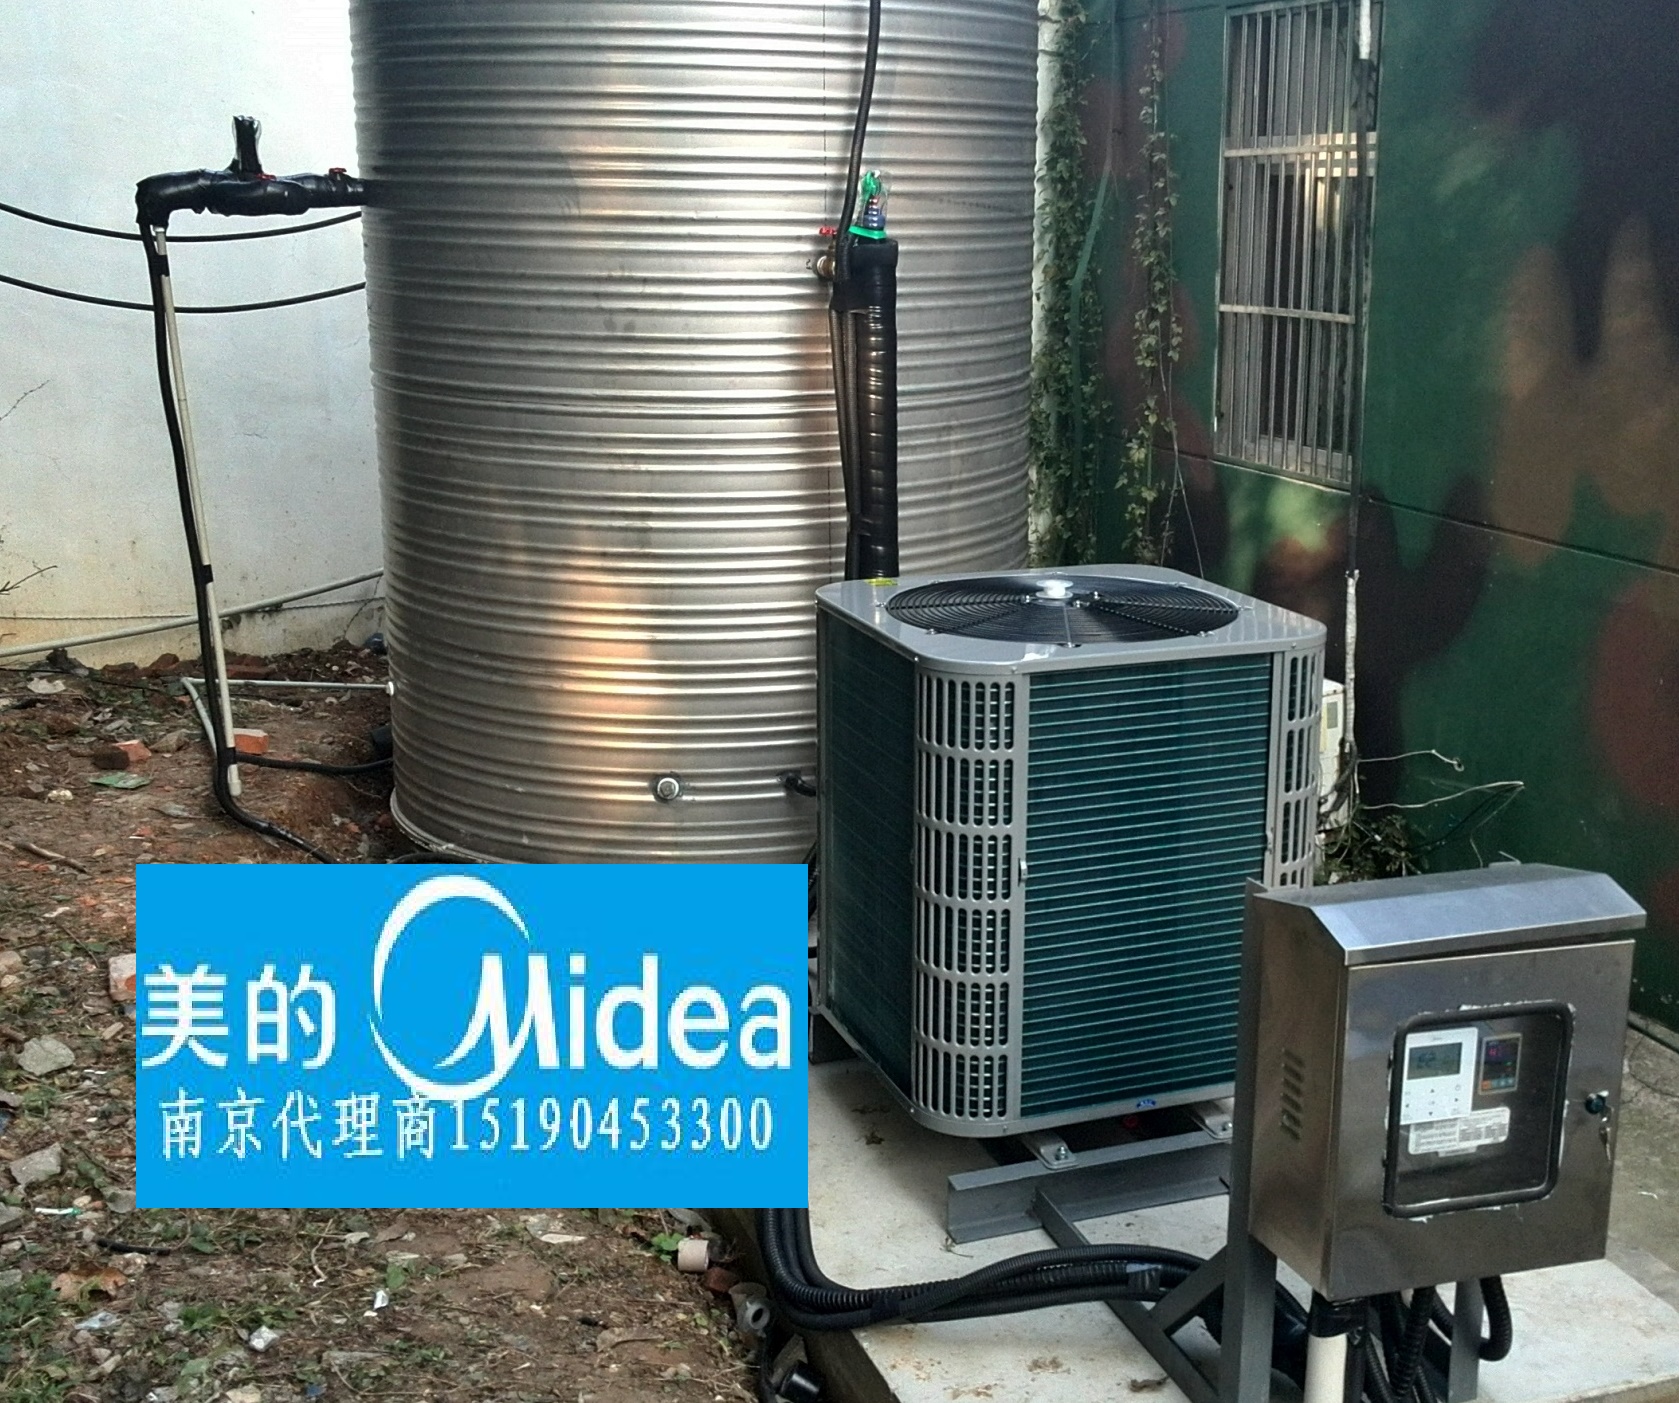 空气能热水器安装在哪里比较好 空气能热水器怎么安装